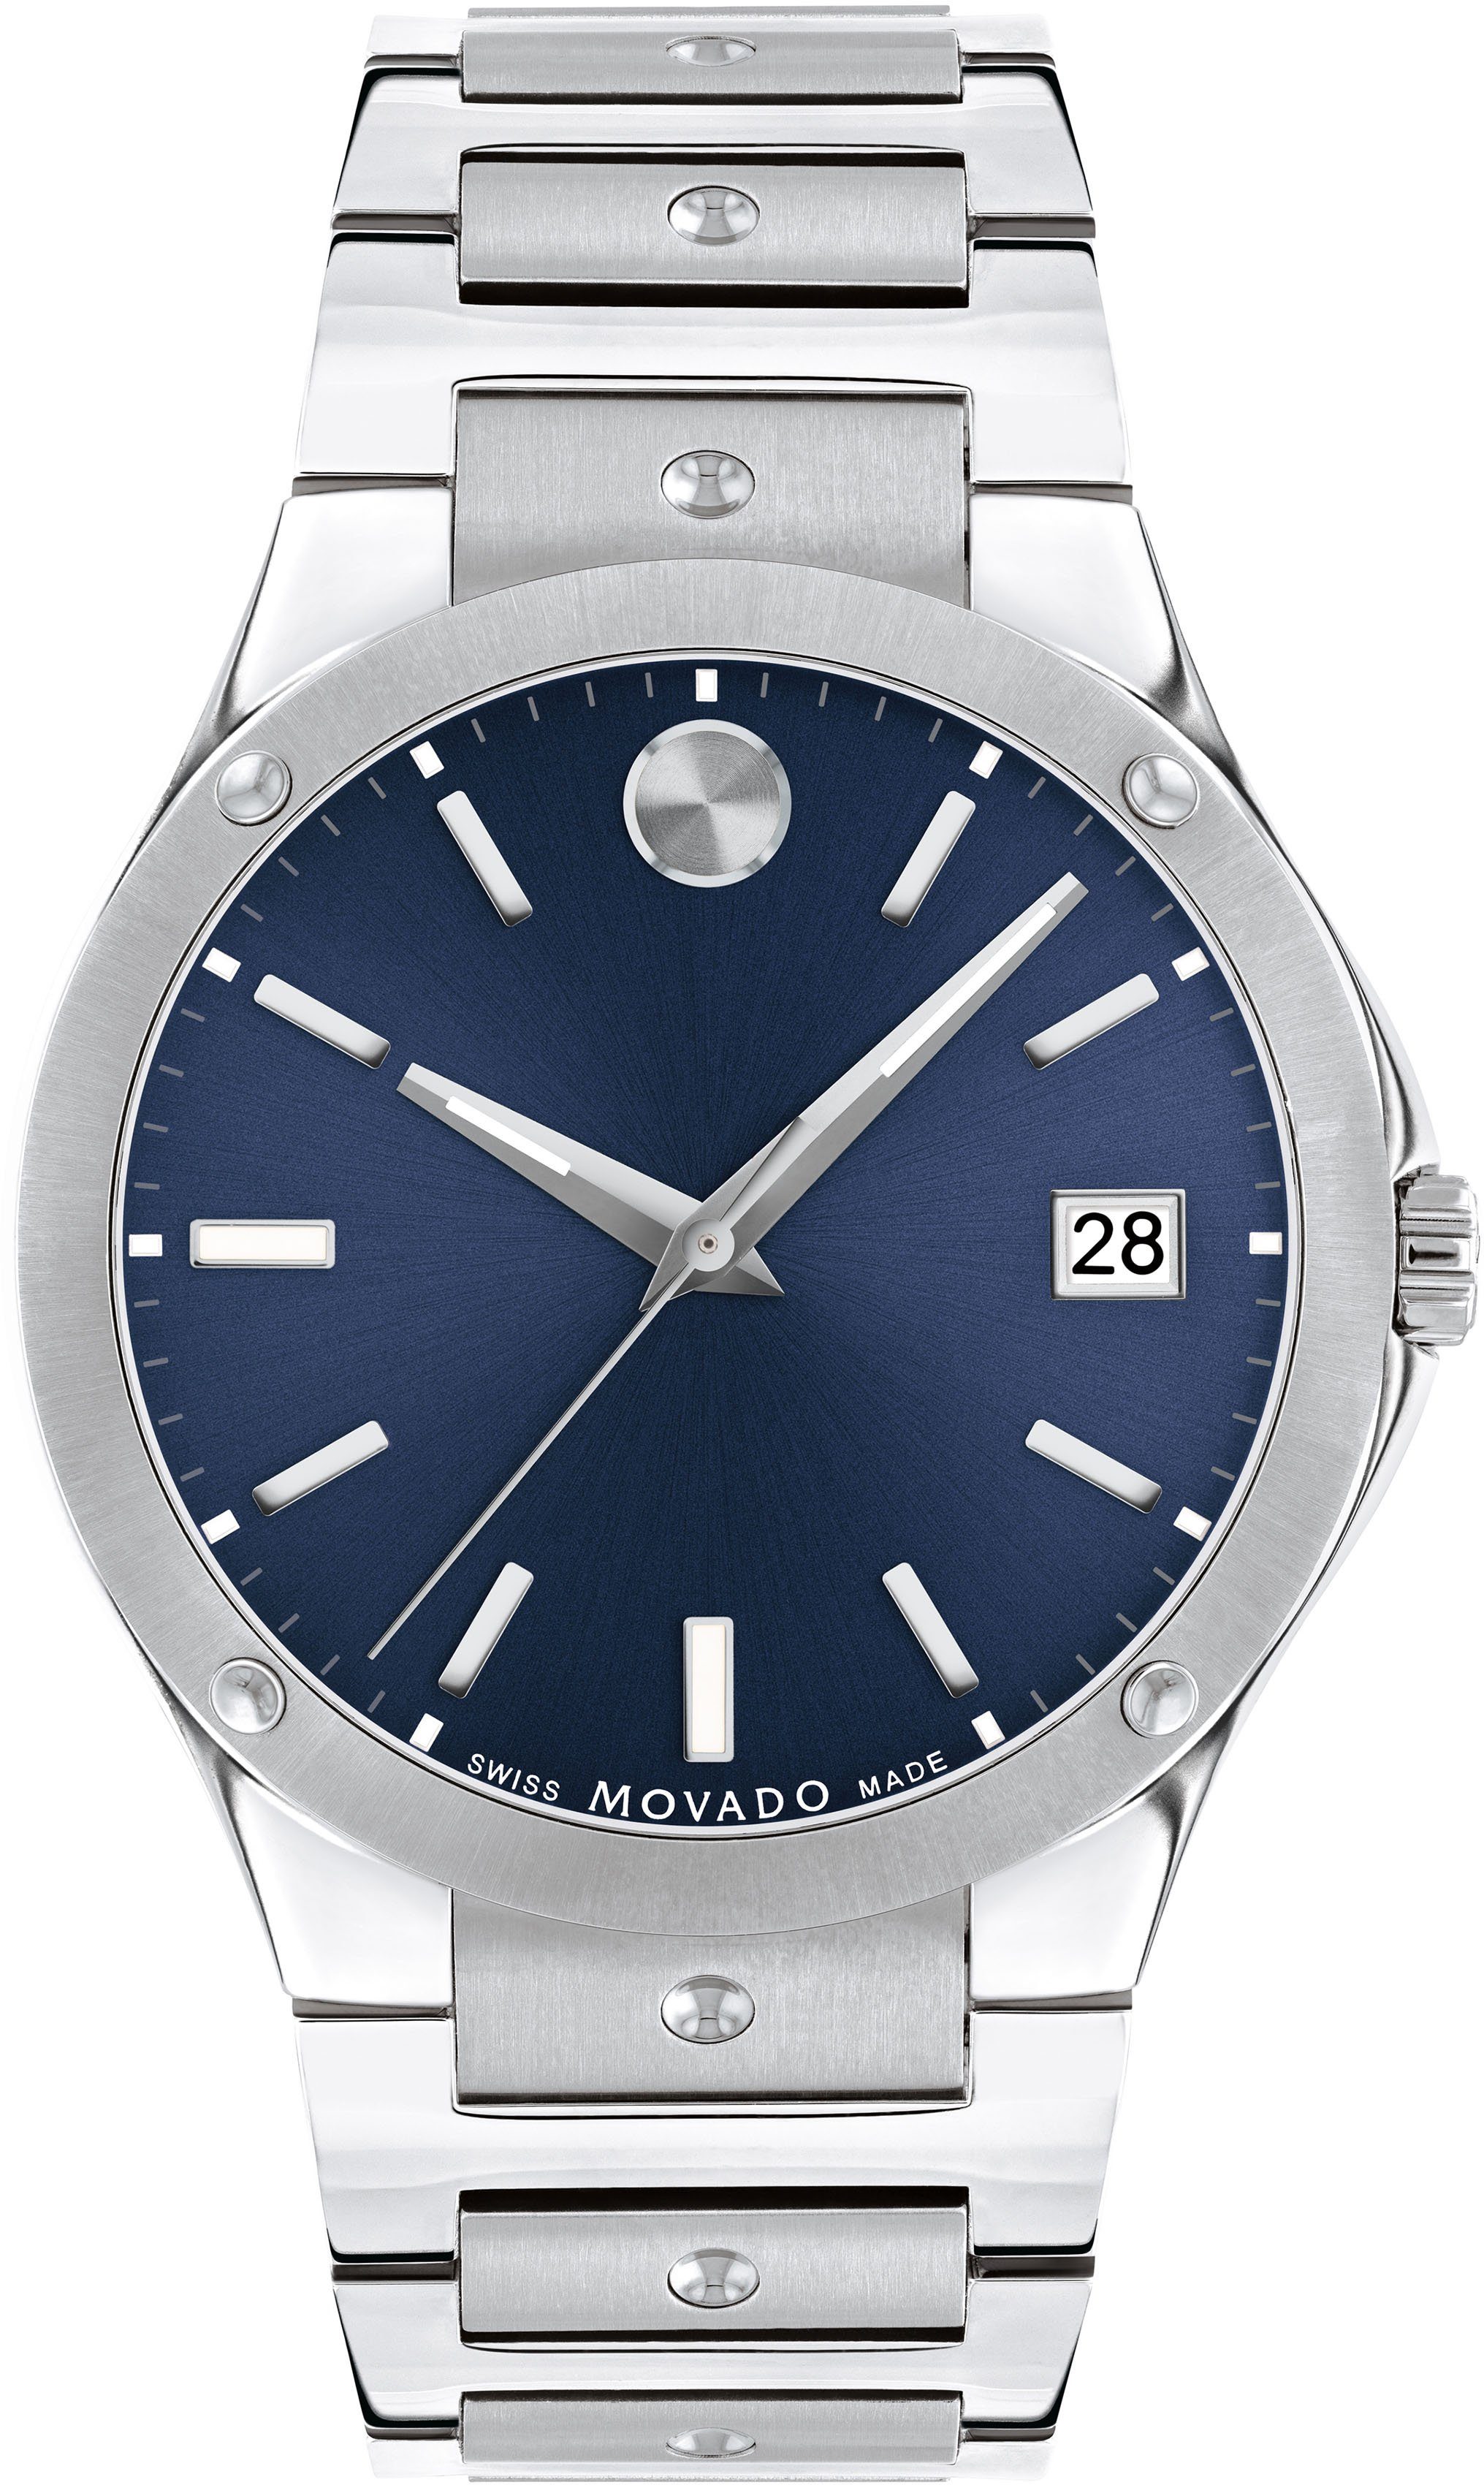 MOVADO Schweizer Uhr SE, 0607513, Quarzuhr, Armbanduhr, Herrenuhr, Swiss Made, Datum